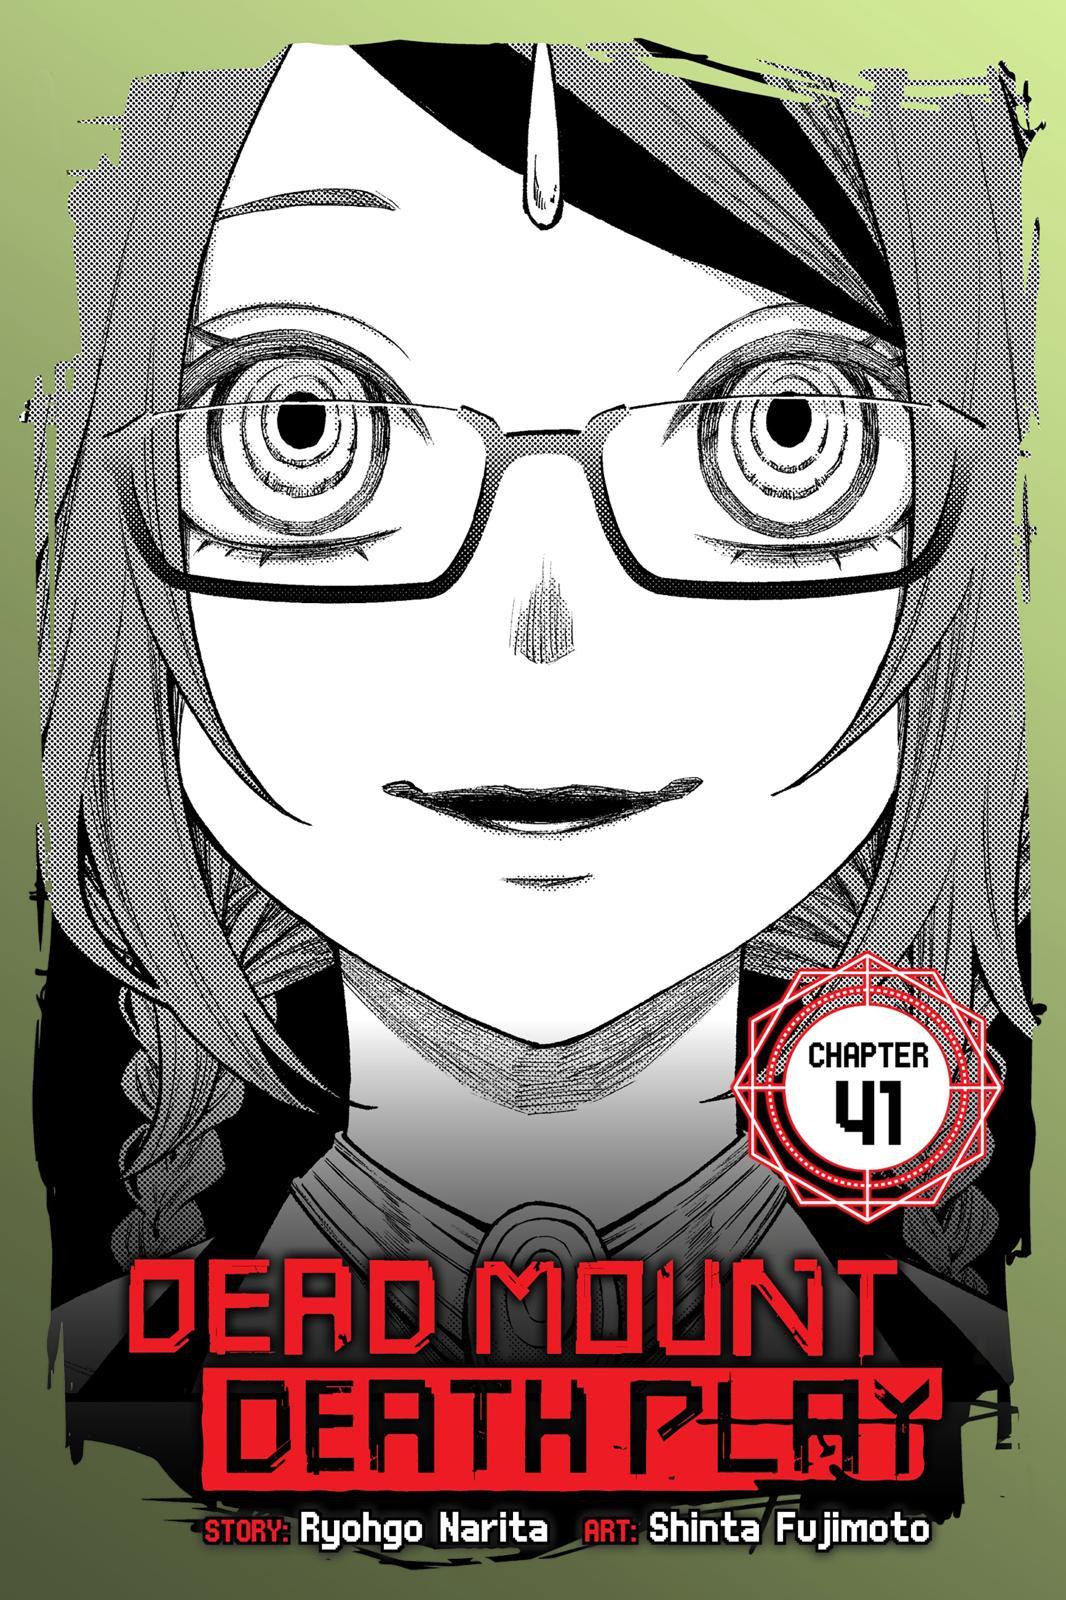 Dead Mount Death Play, Vol. 8 (Dead Mount by Narita, Ryohgo